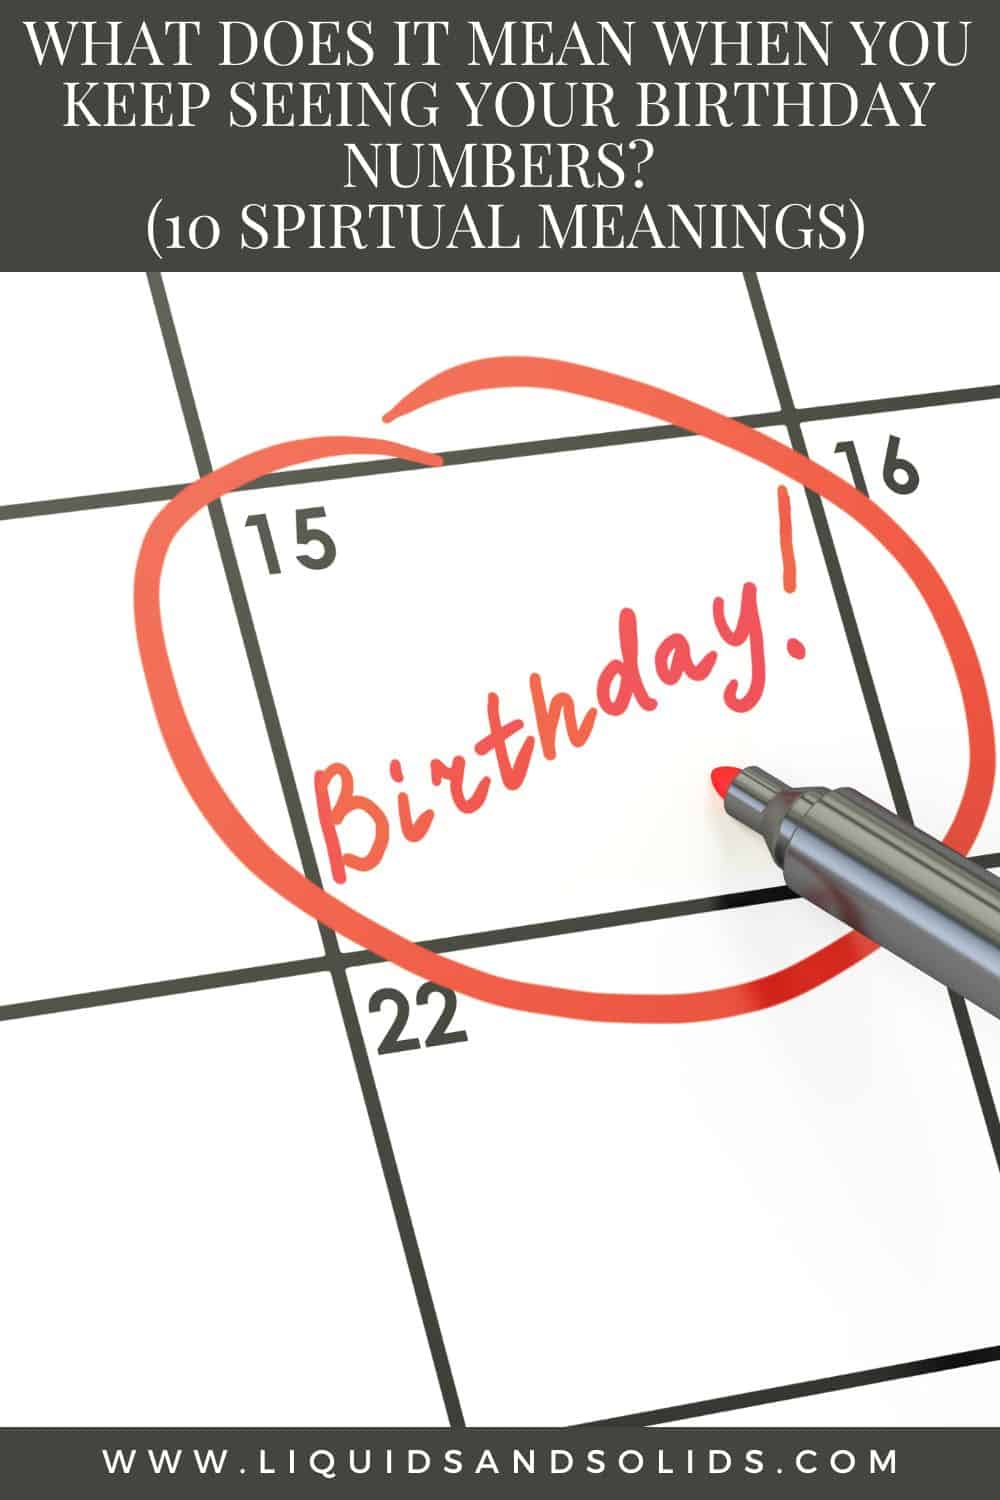  Mit jelent, ha folyamatosan látod a születésnapi számaidat? (10 spirituális jelentés)